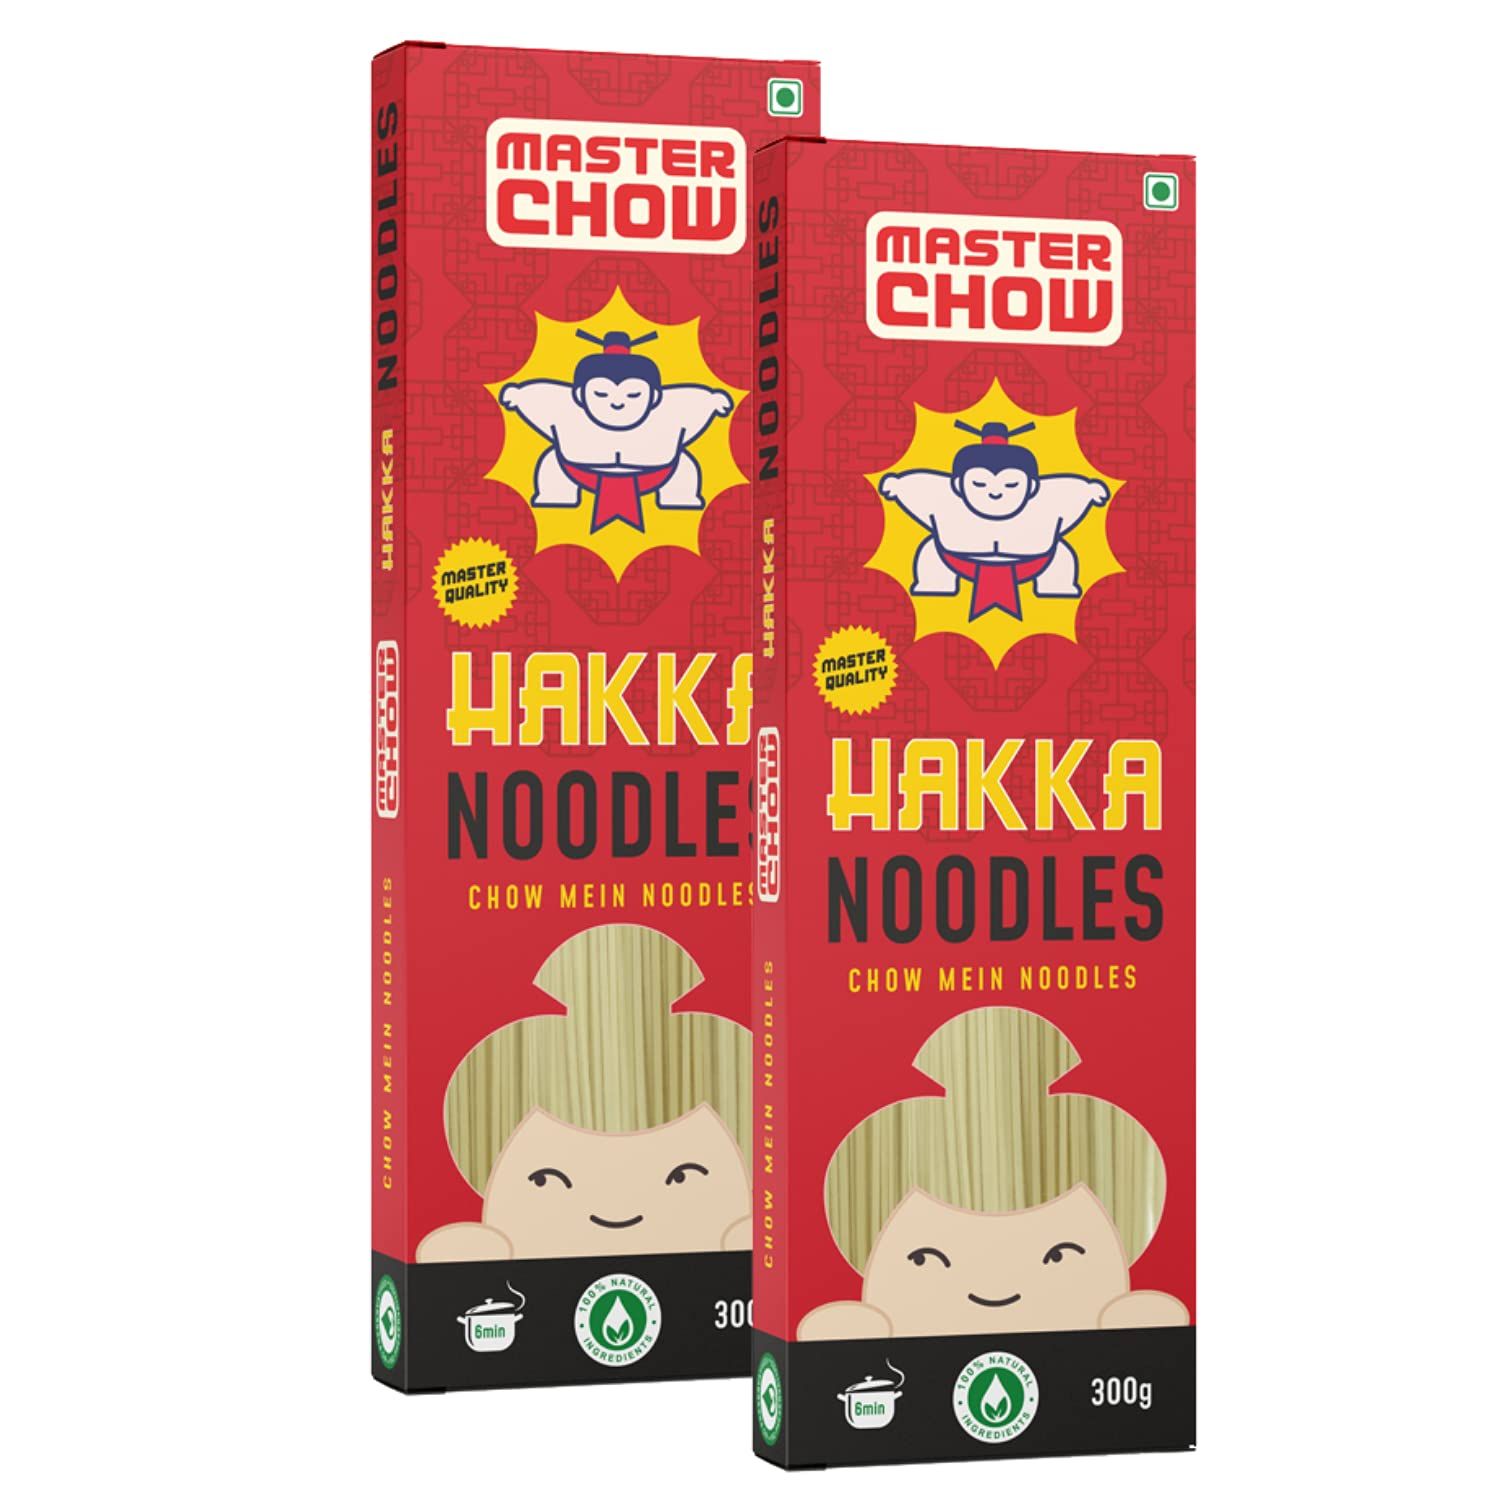 Master Chow Hakka Noodles Image